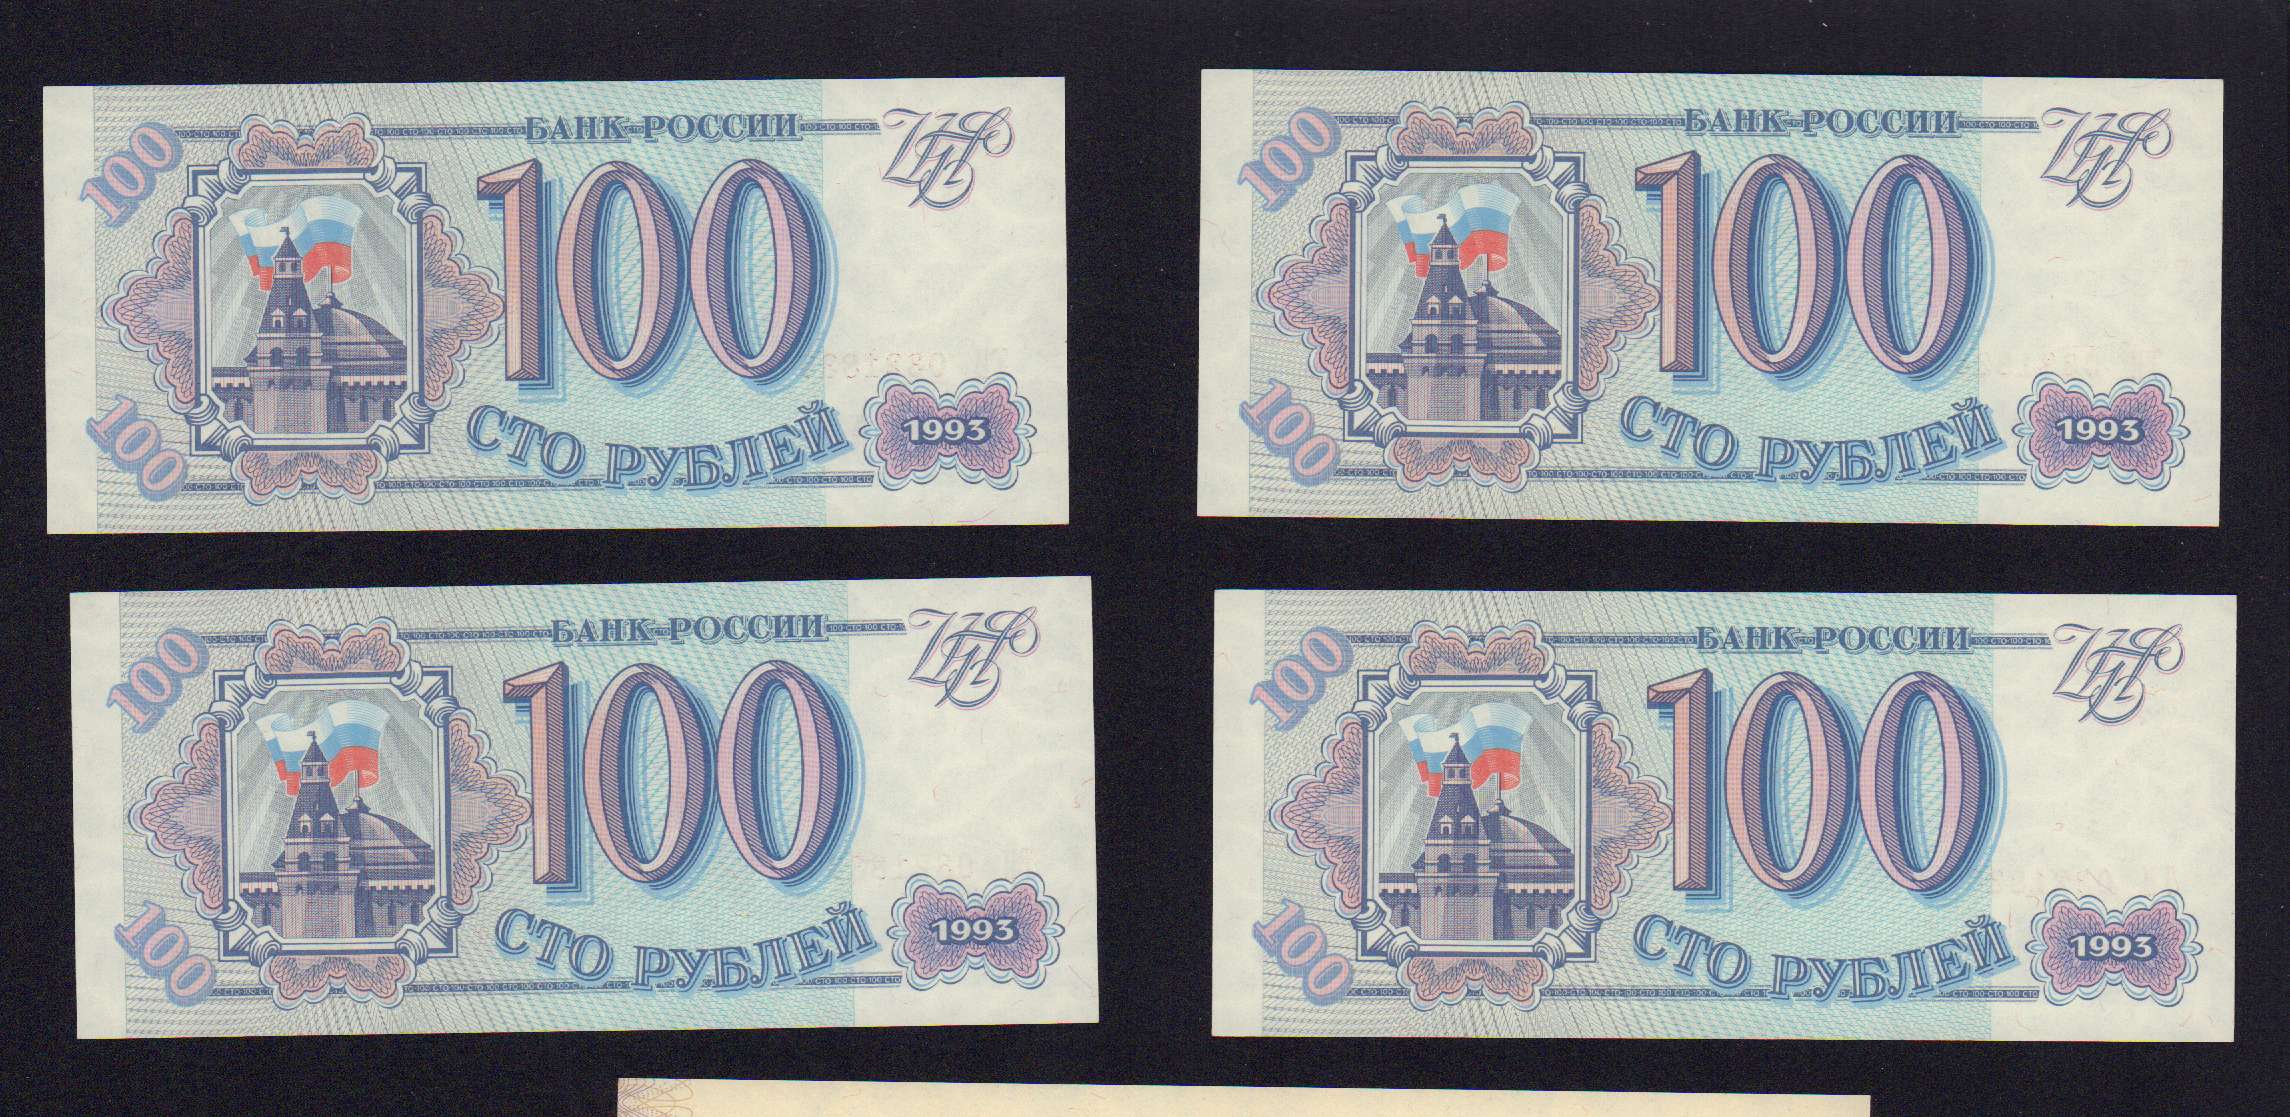 В районе 500 рублей. Боны 1993 года Россия.